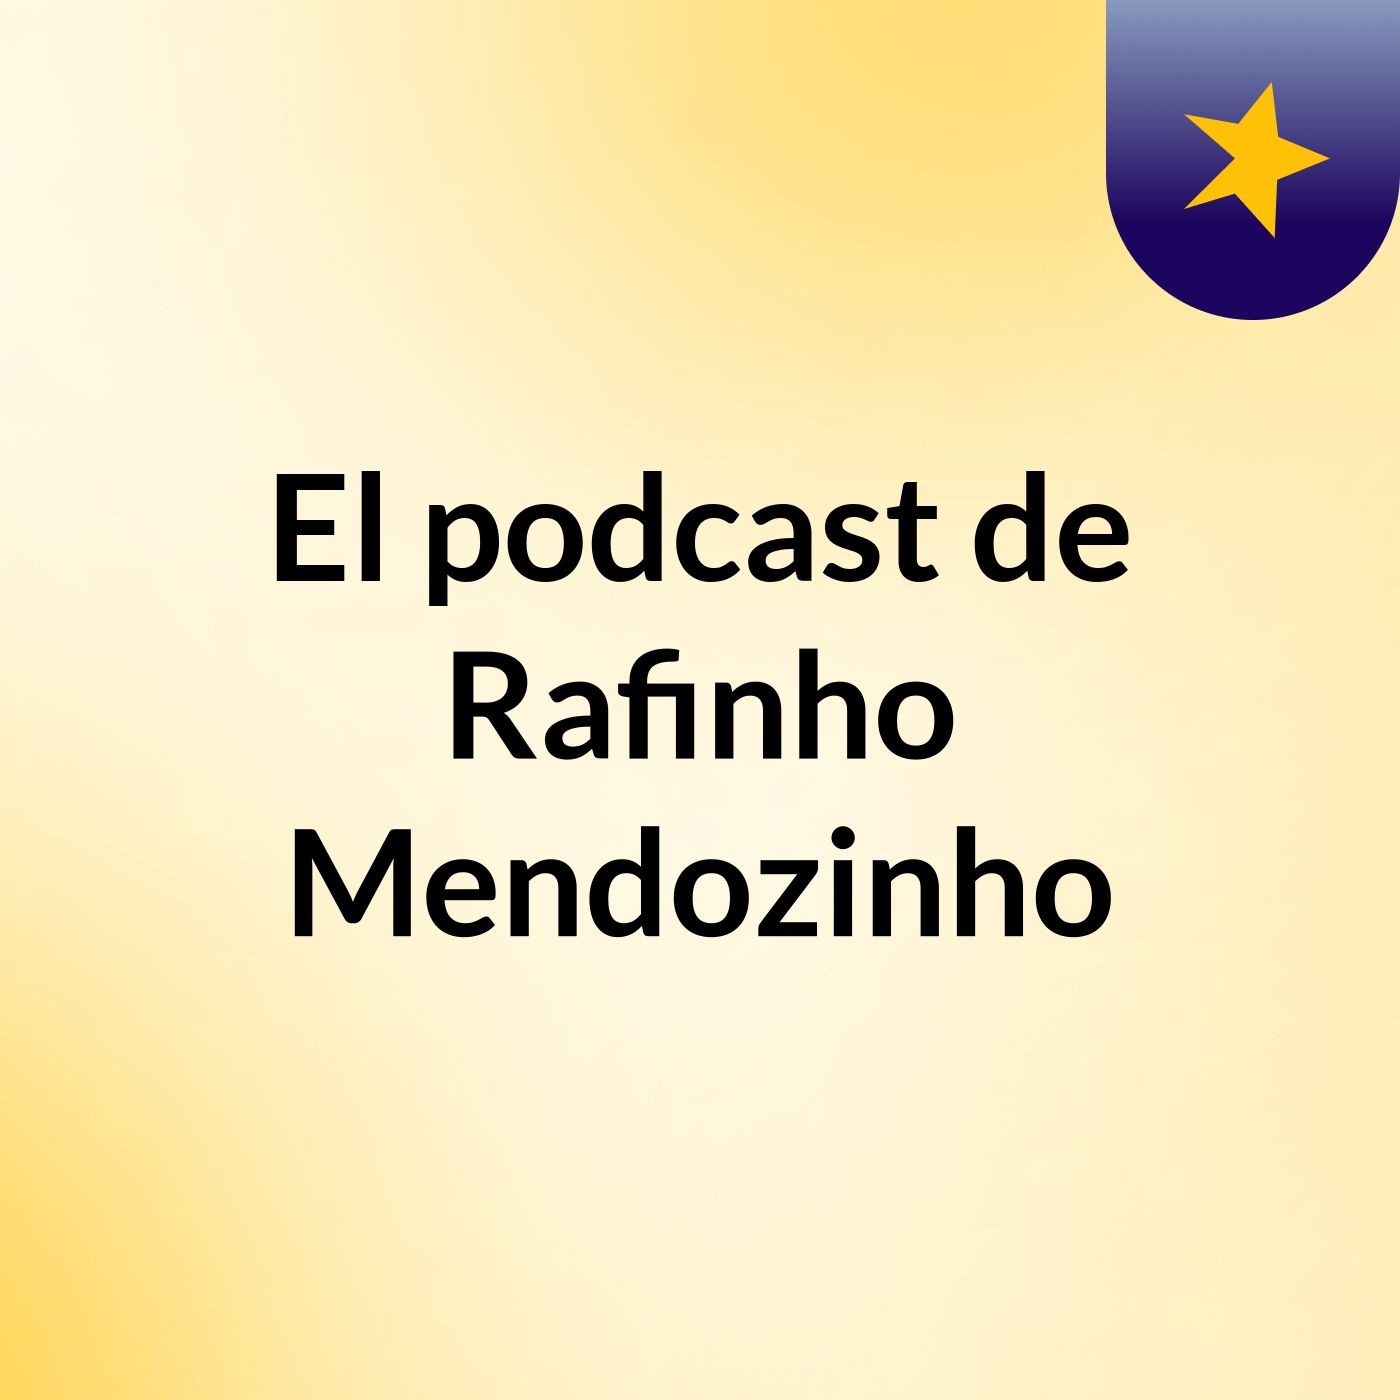 El podcast de Rafinho Mendozinho